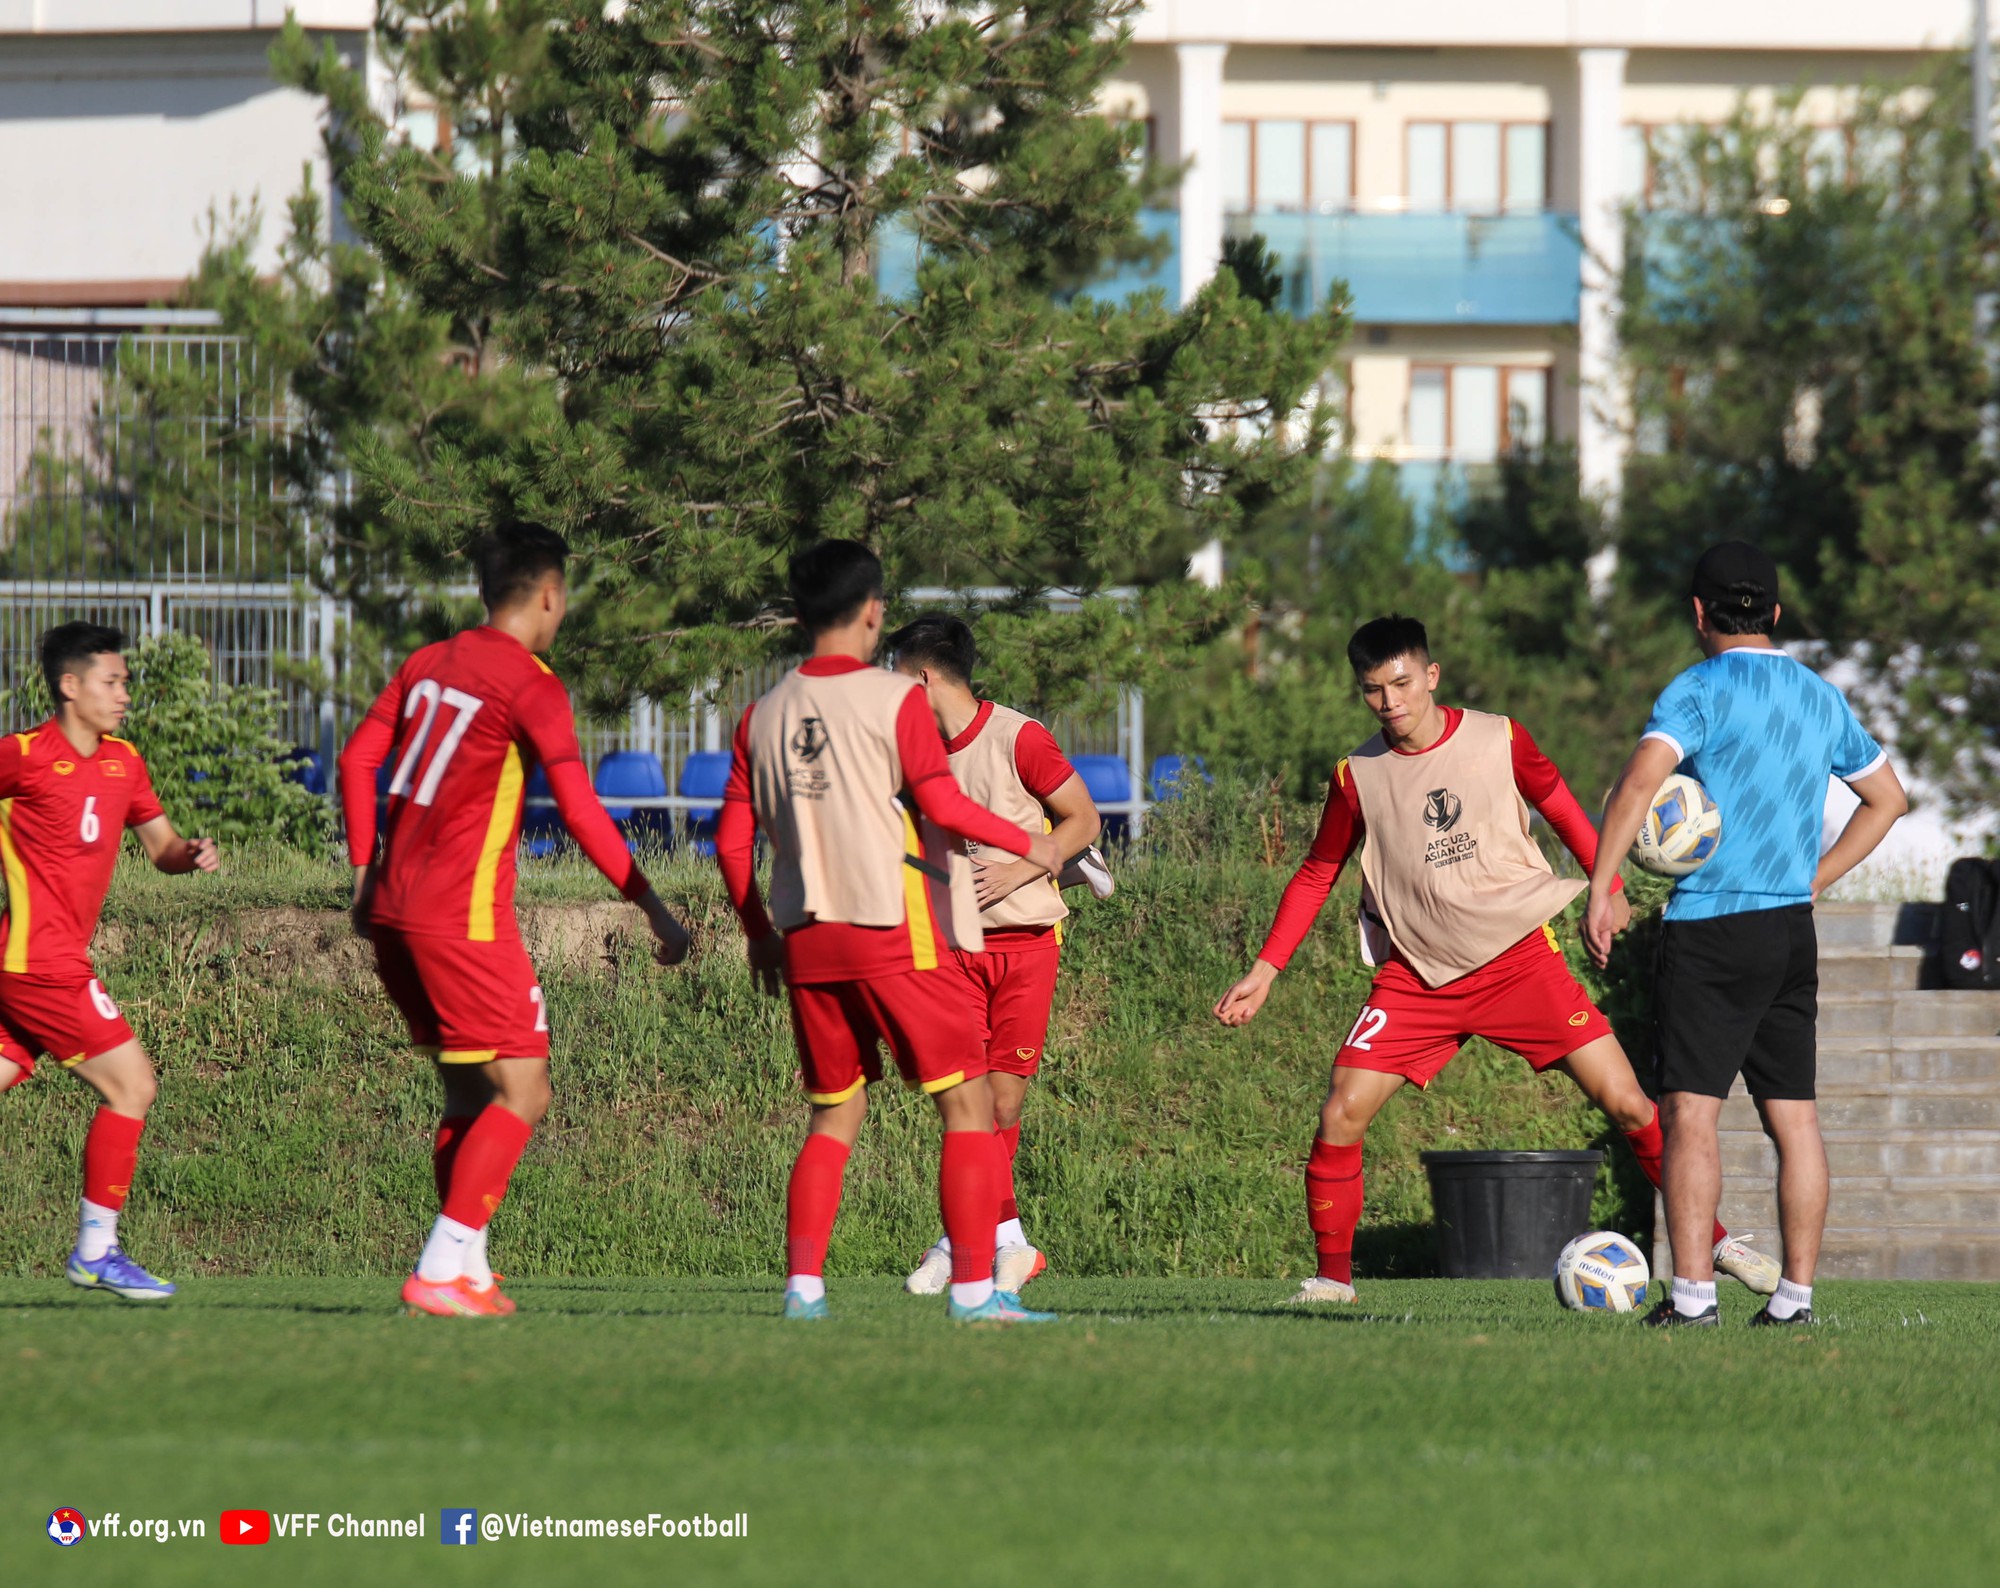 Cựu danh thủ Phạm Như Thuần chỉ ra &quot;chìa khóa&quot; giúp U23 Việt Nam có điểm trước U23 Hàn Quốc - Ảnh 3.